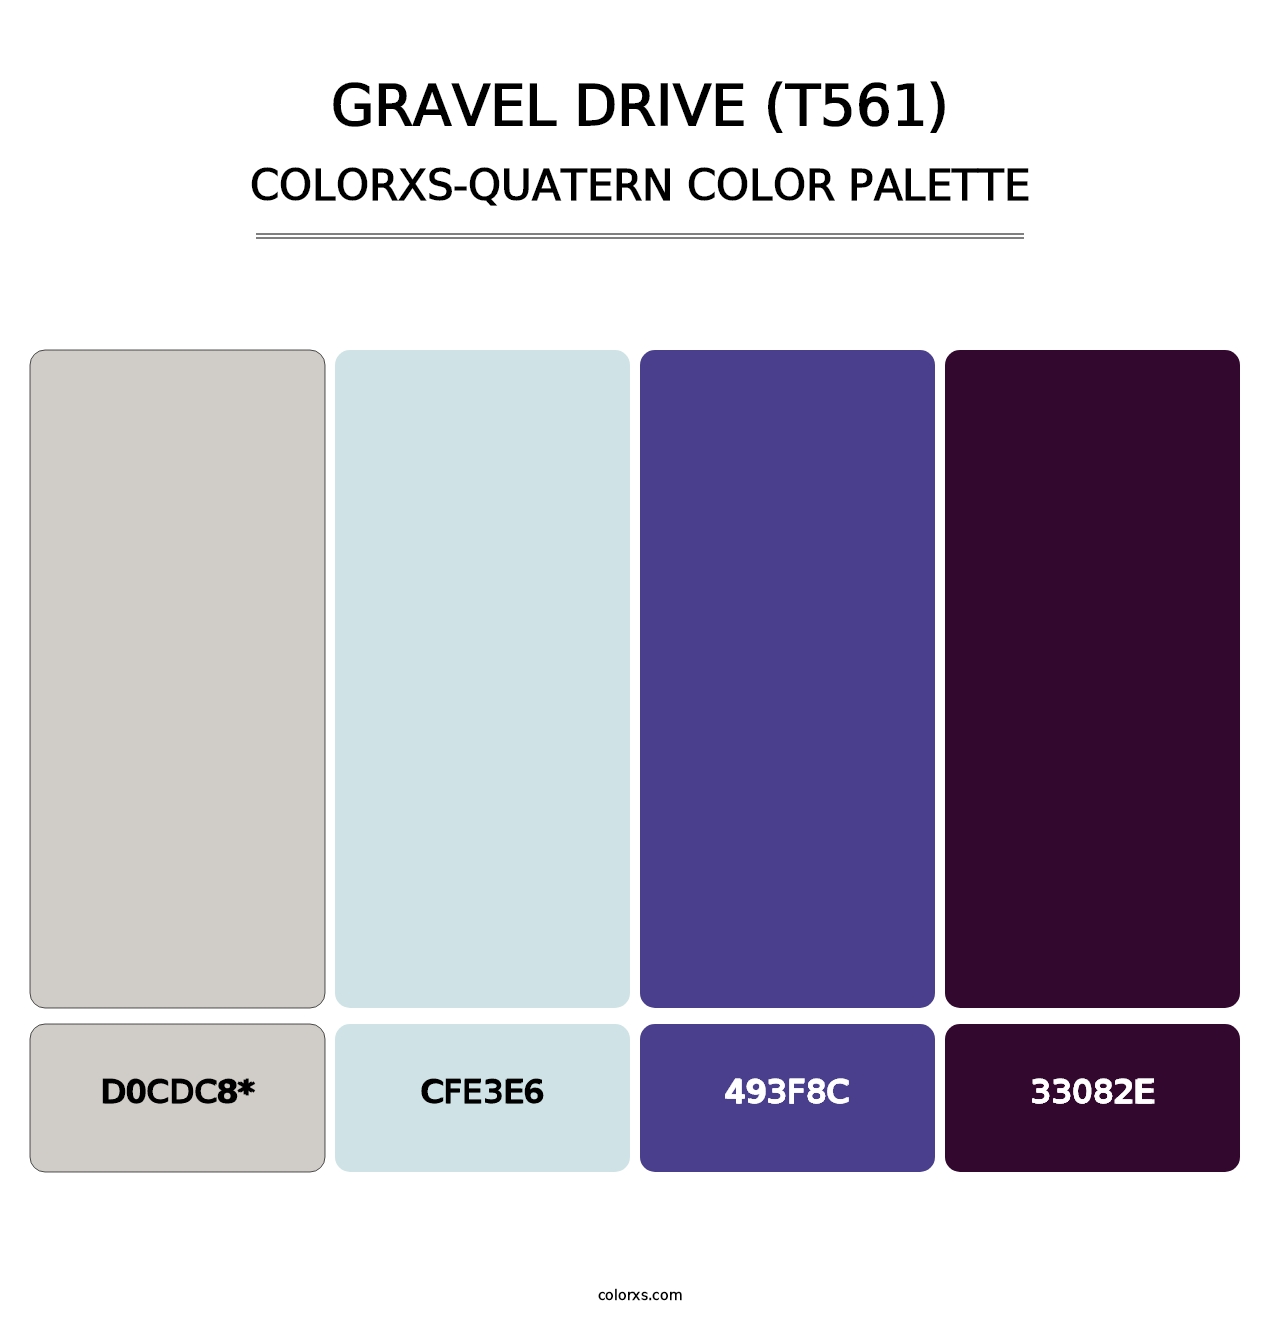 Gravel Drive (T561) - Colorxs Quatern Palette